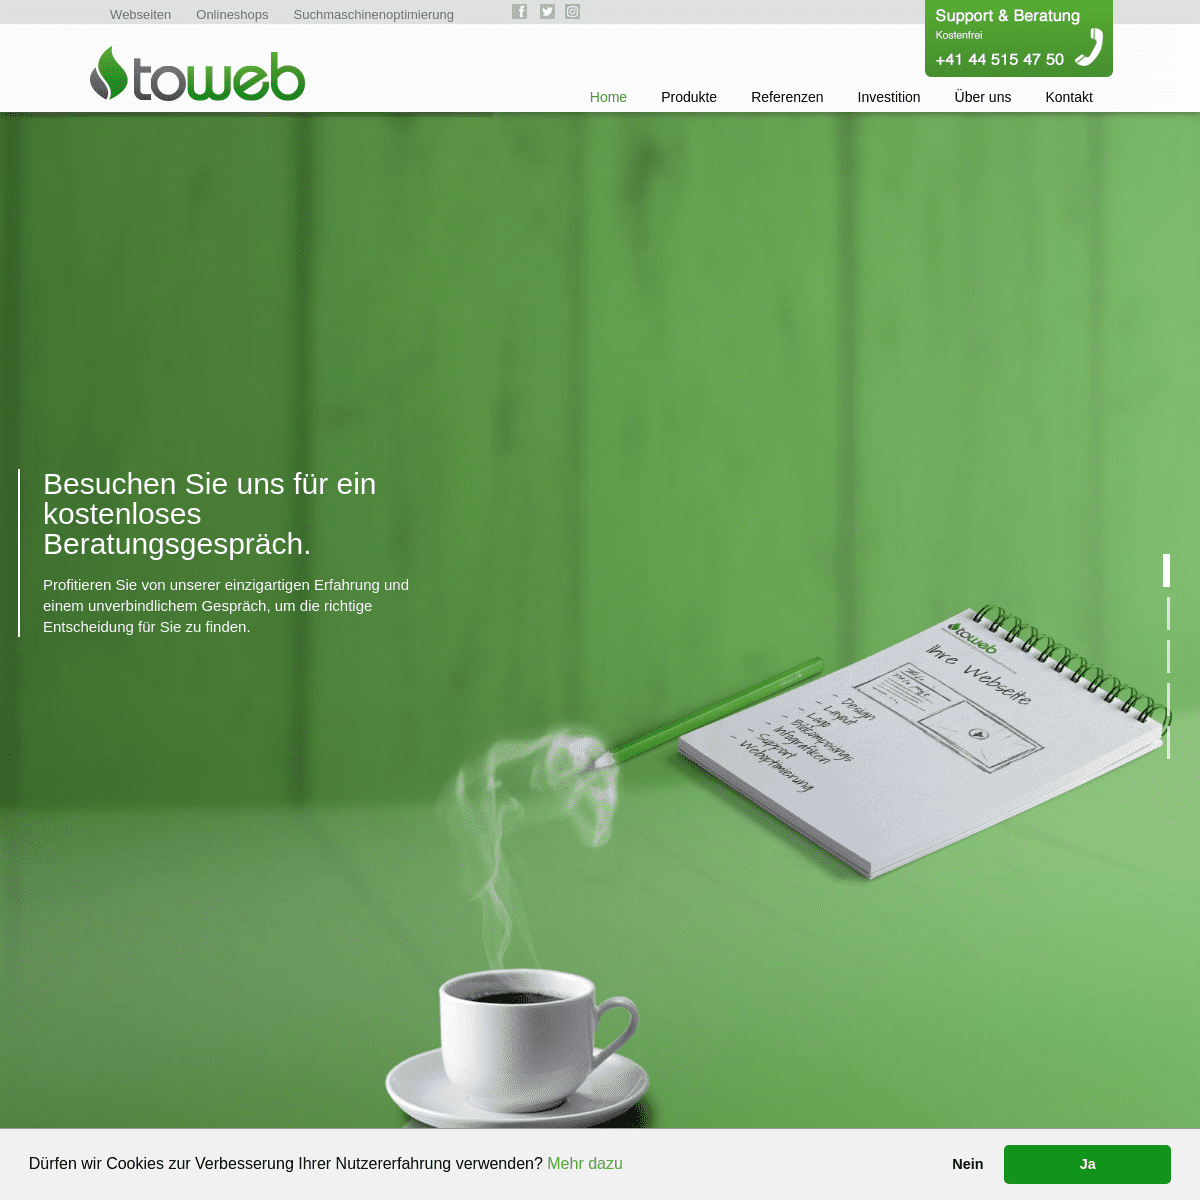 TOWEB: Webagentur für Webseiten, Onlineshops, Suchmaschinenoptimierung (SEO) und Online Marketing